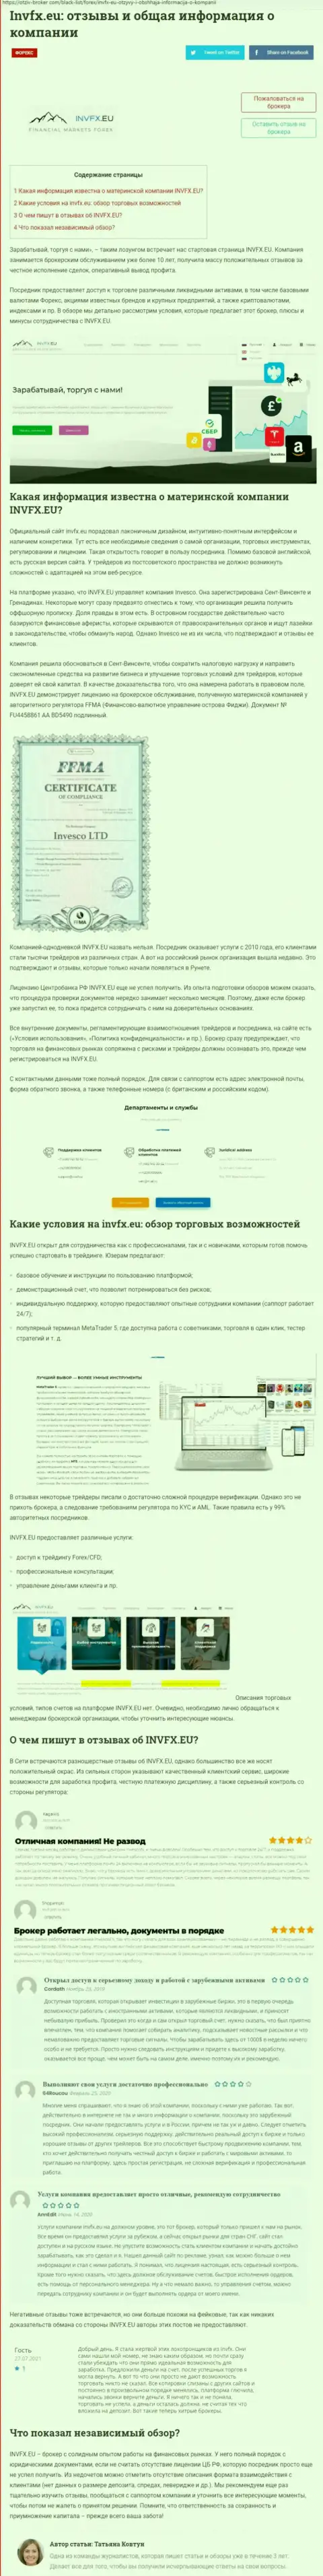 Обзорная публикация на информационном сервисе Otziv Broker Com, отведенная FOREX дилеру INVFX Eu